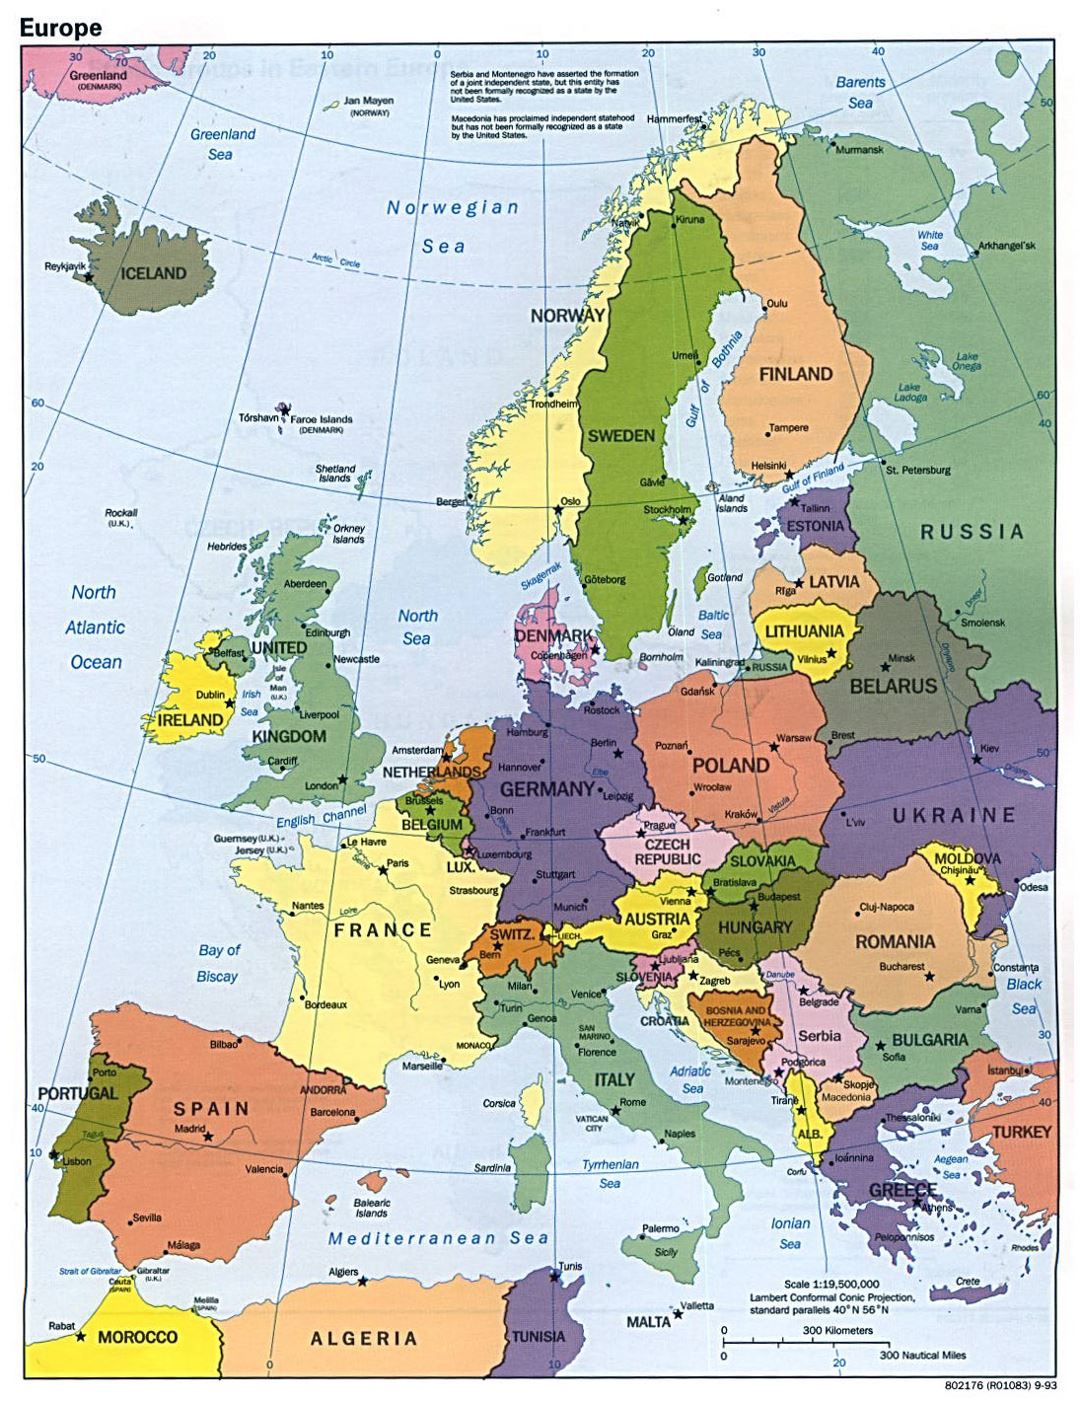 Mapa político detallado de Europa - 1993